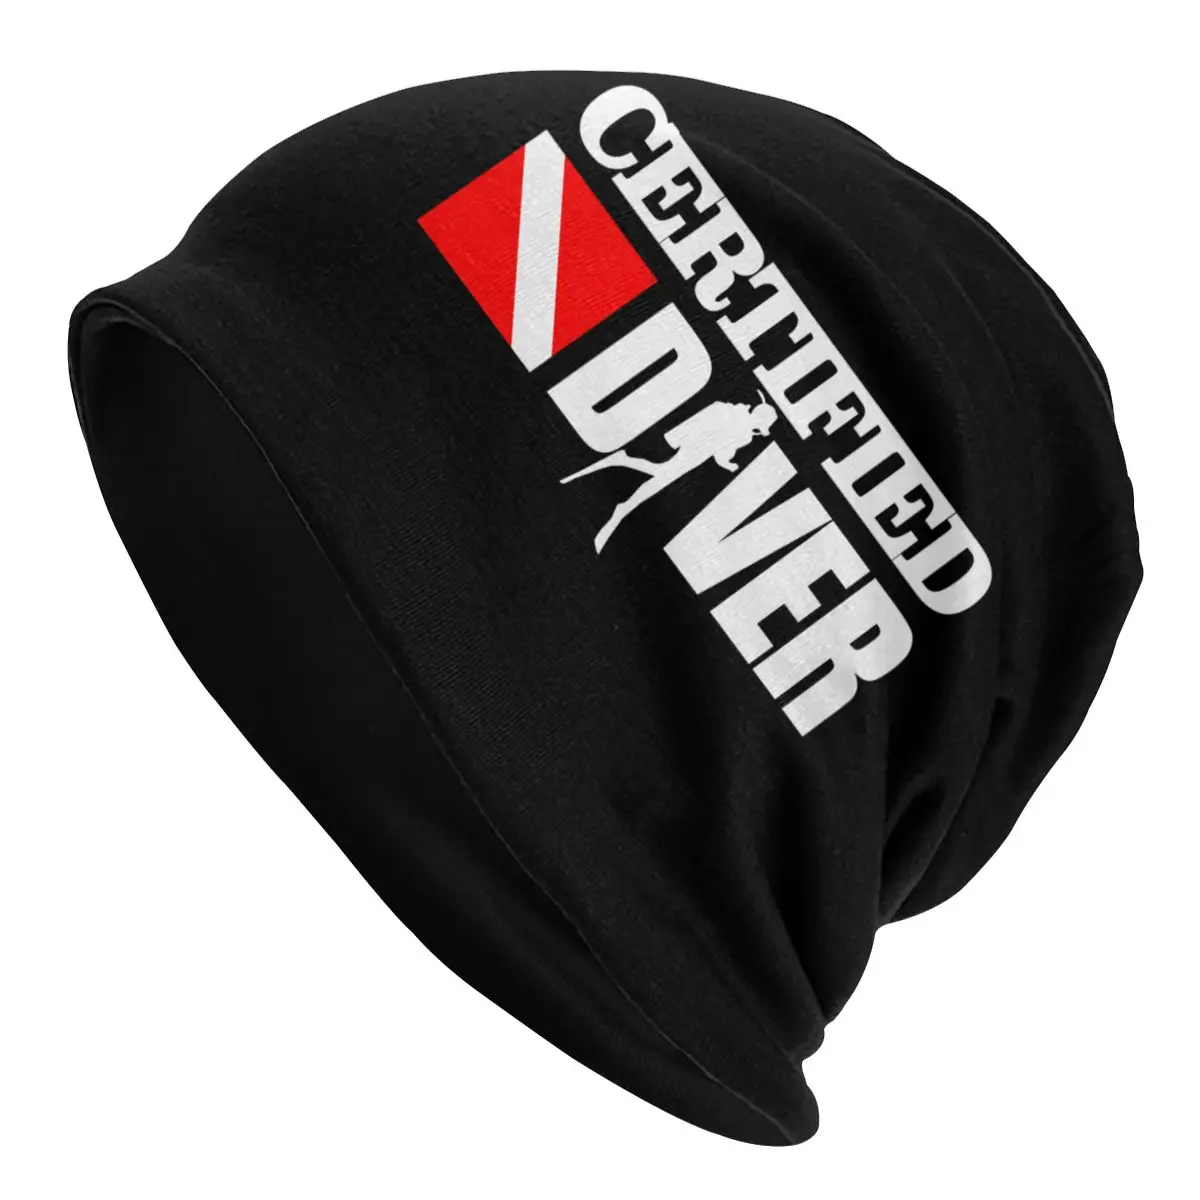 

Certified Diver Beanies Caps Unisex Bonnet Winter Warm Knit Hat Men Women Adult Scuba Diving Dive Beanie Hats Outdoor Ski Cap